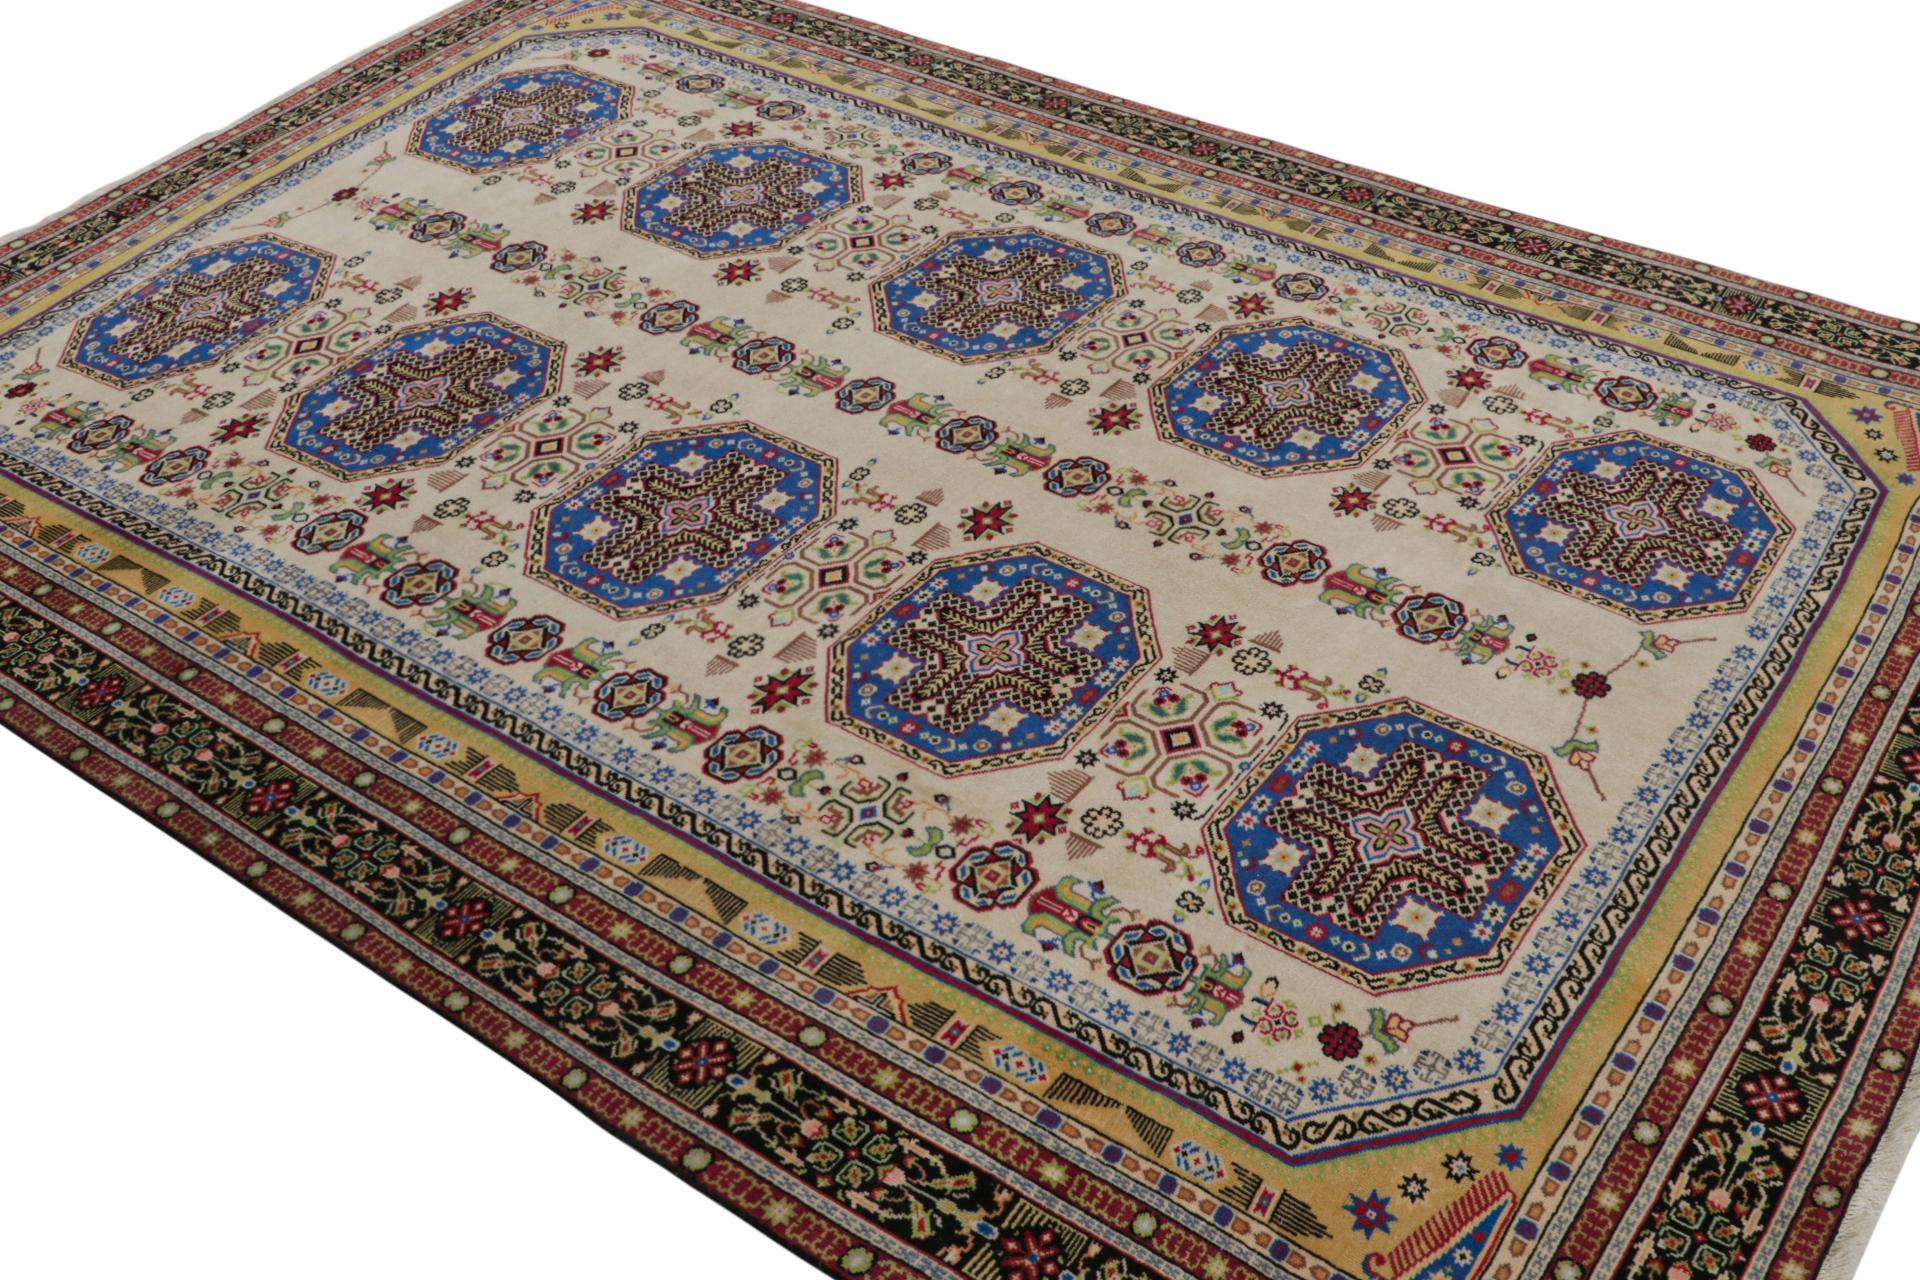 Handgeknüpft aus Wolle, ein 8x11 türkischer Hereke-Teppich, ca. 1970-1980 - der neueste in der Vintage-Auswahl von Rug & Kilim.

Über das Design:


Aufmerksame Augen werden feststellen, dass Beige farbenfrohe Medaillons in gesättigten, leuchtenden